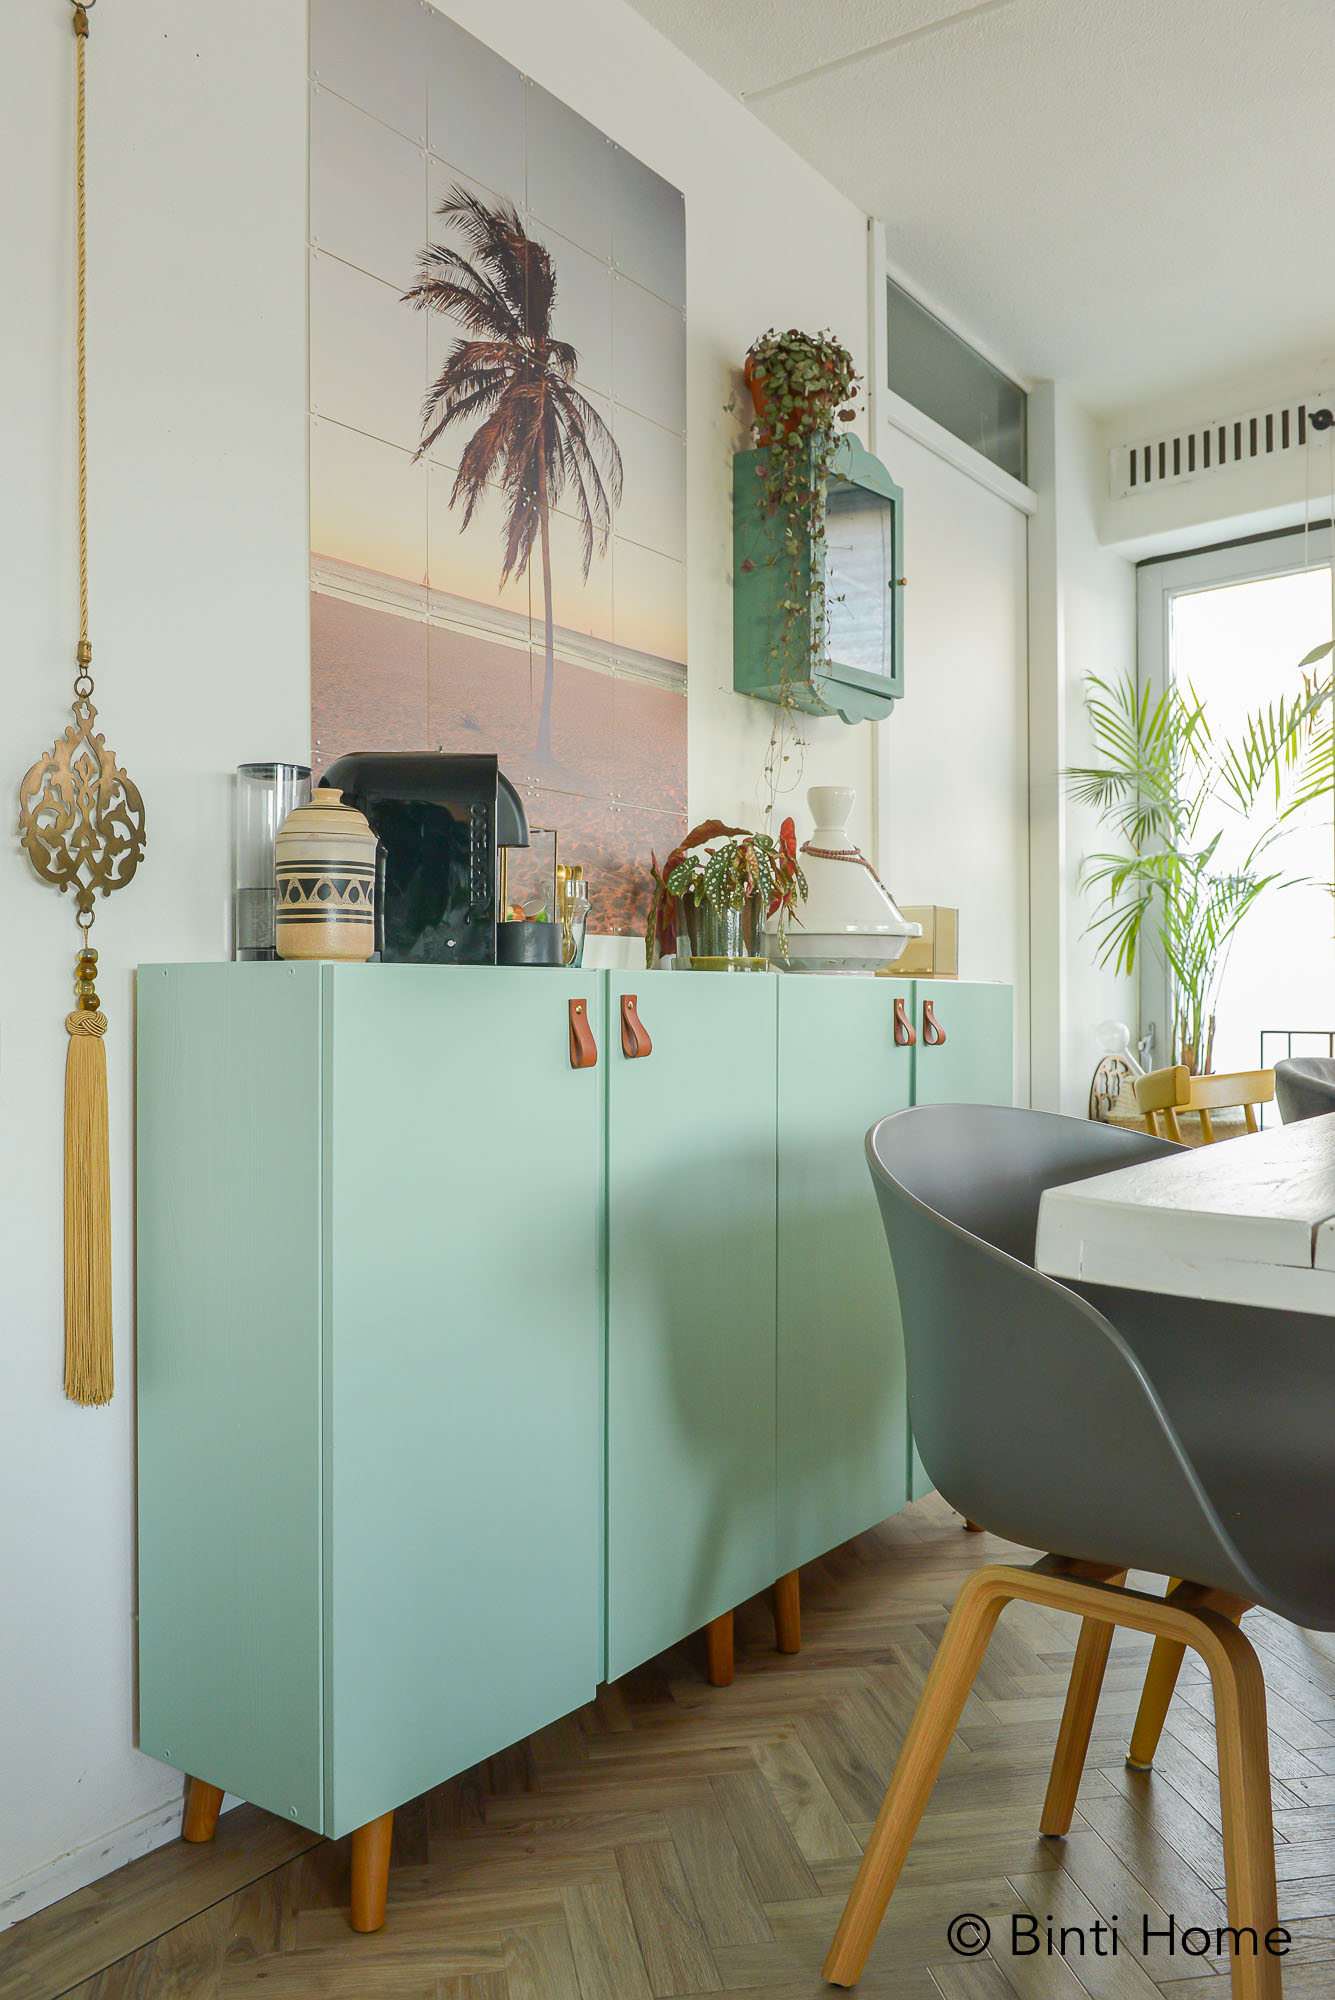 IVAR IKEA HACK - Top5 ideeën | Favorieten van Instagram - Binti Home | Interieurontwerpstudio & inspiratie blog